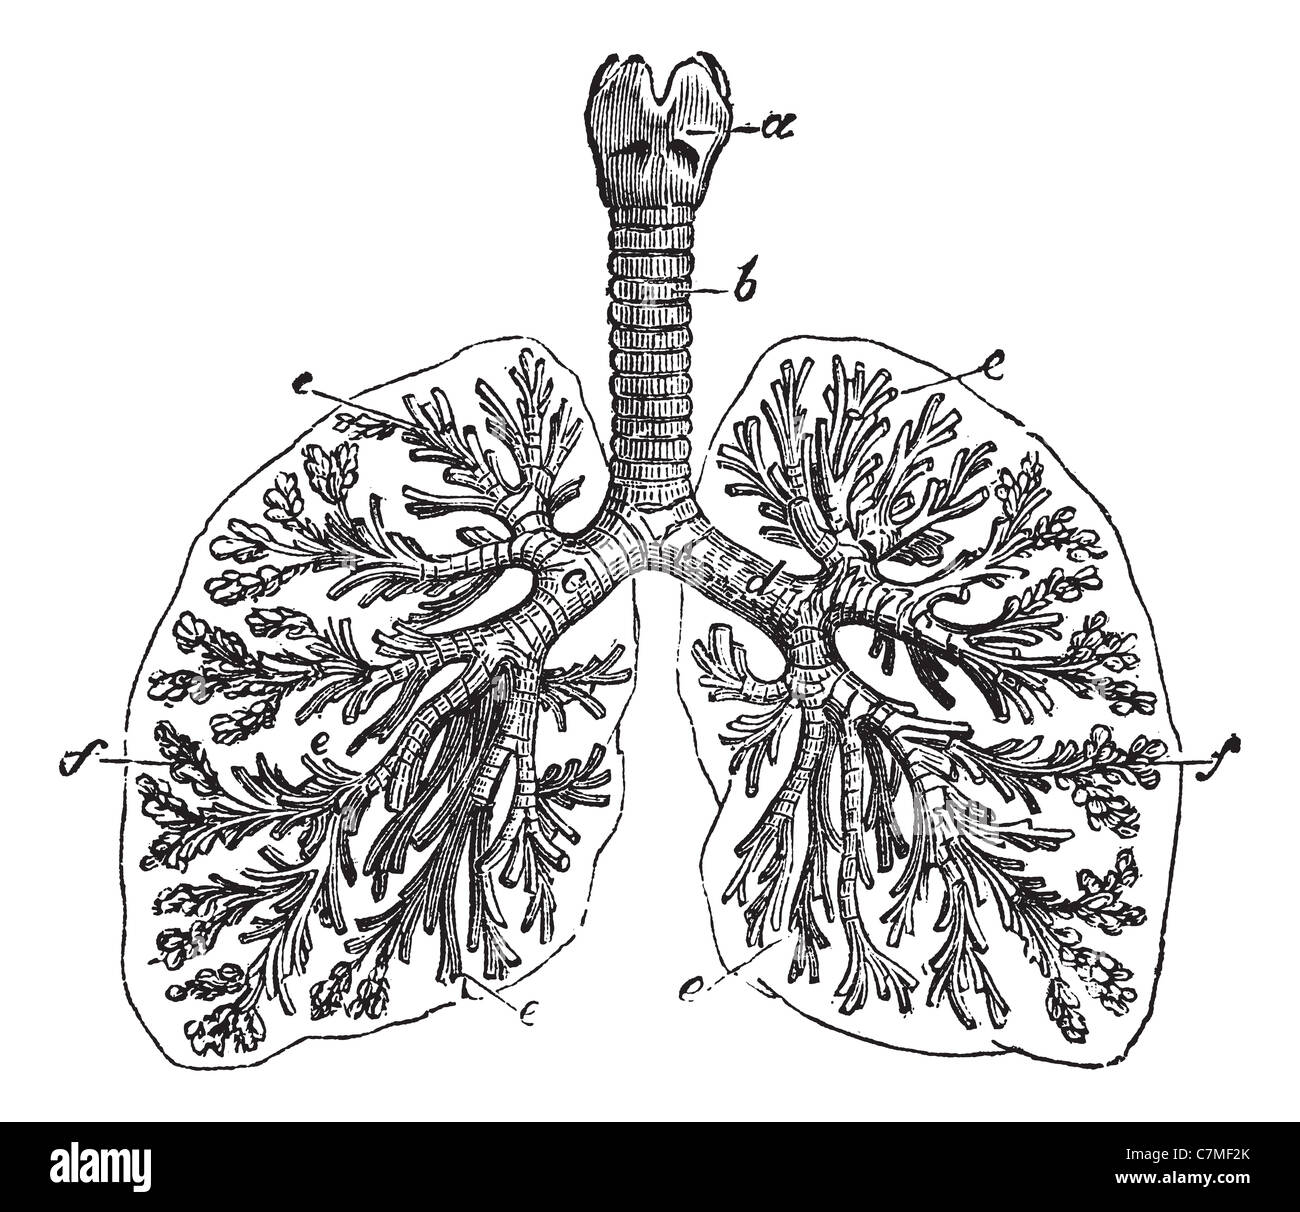 Les poumons de l'homme, gravure d'époque. Vieille illustration gravée de poumons de l'homme structure avec le fonctionnement des pièces. Banque D'Images